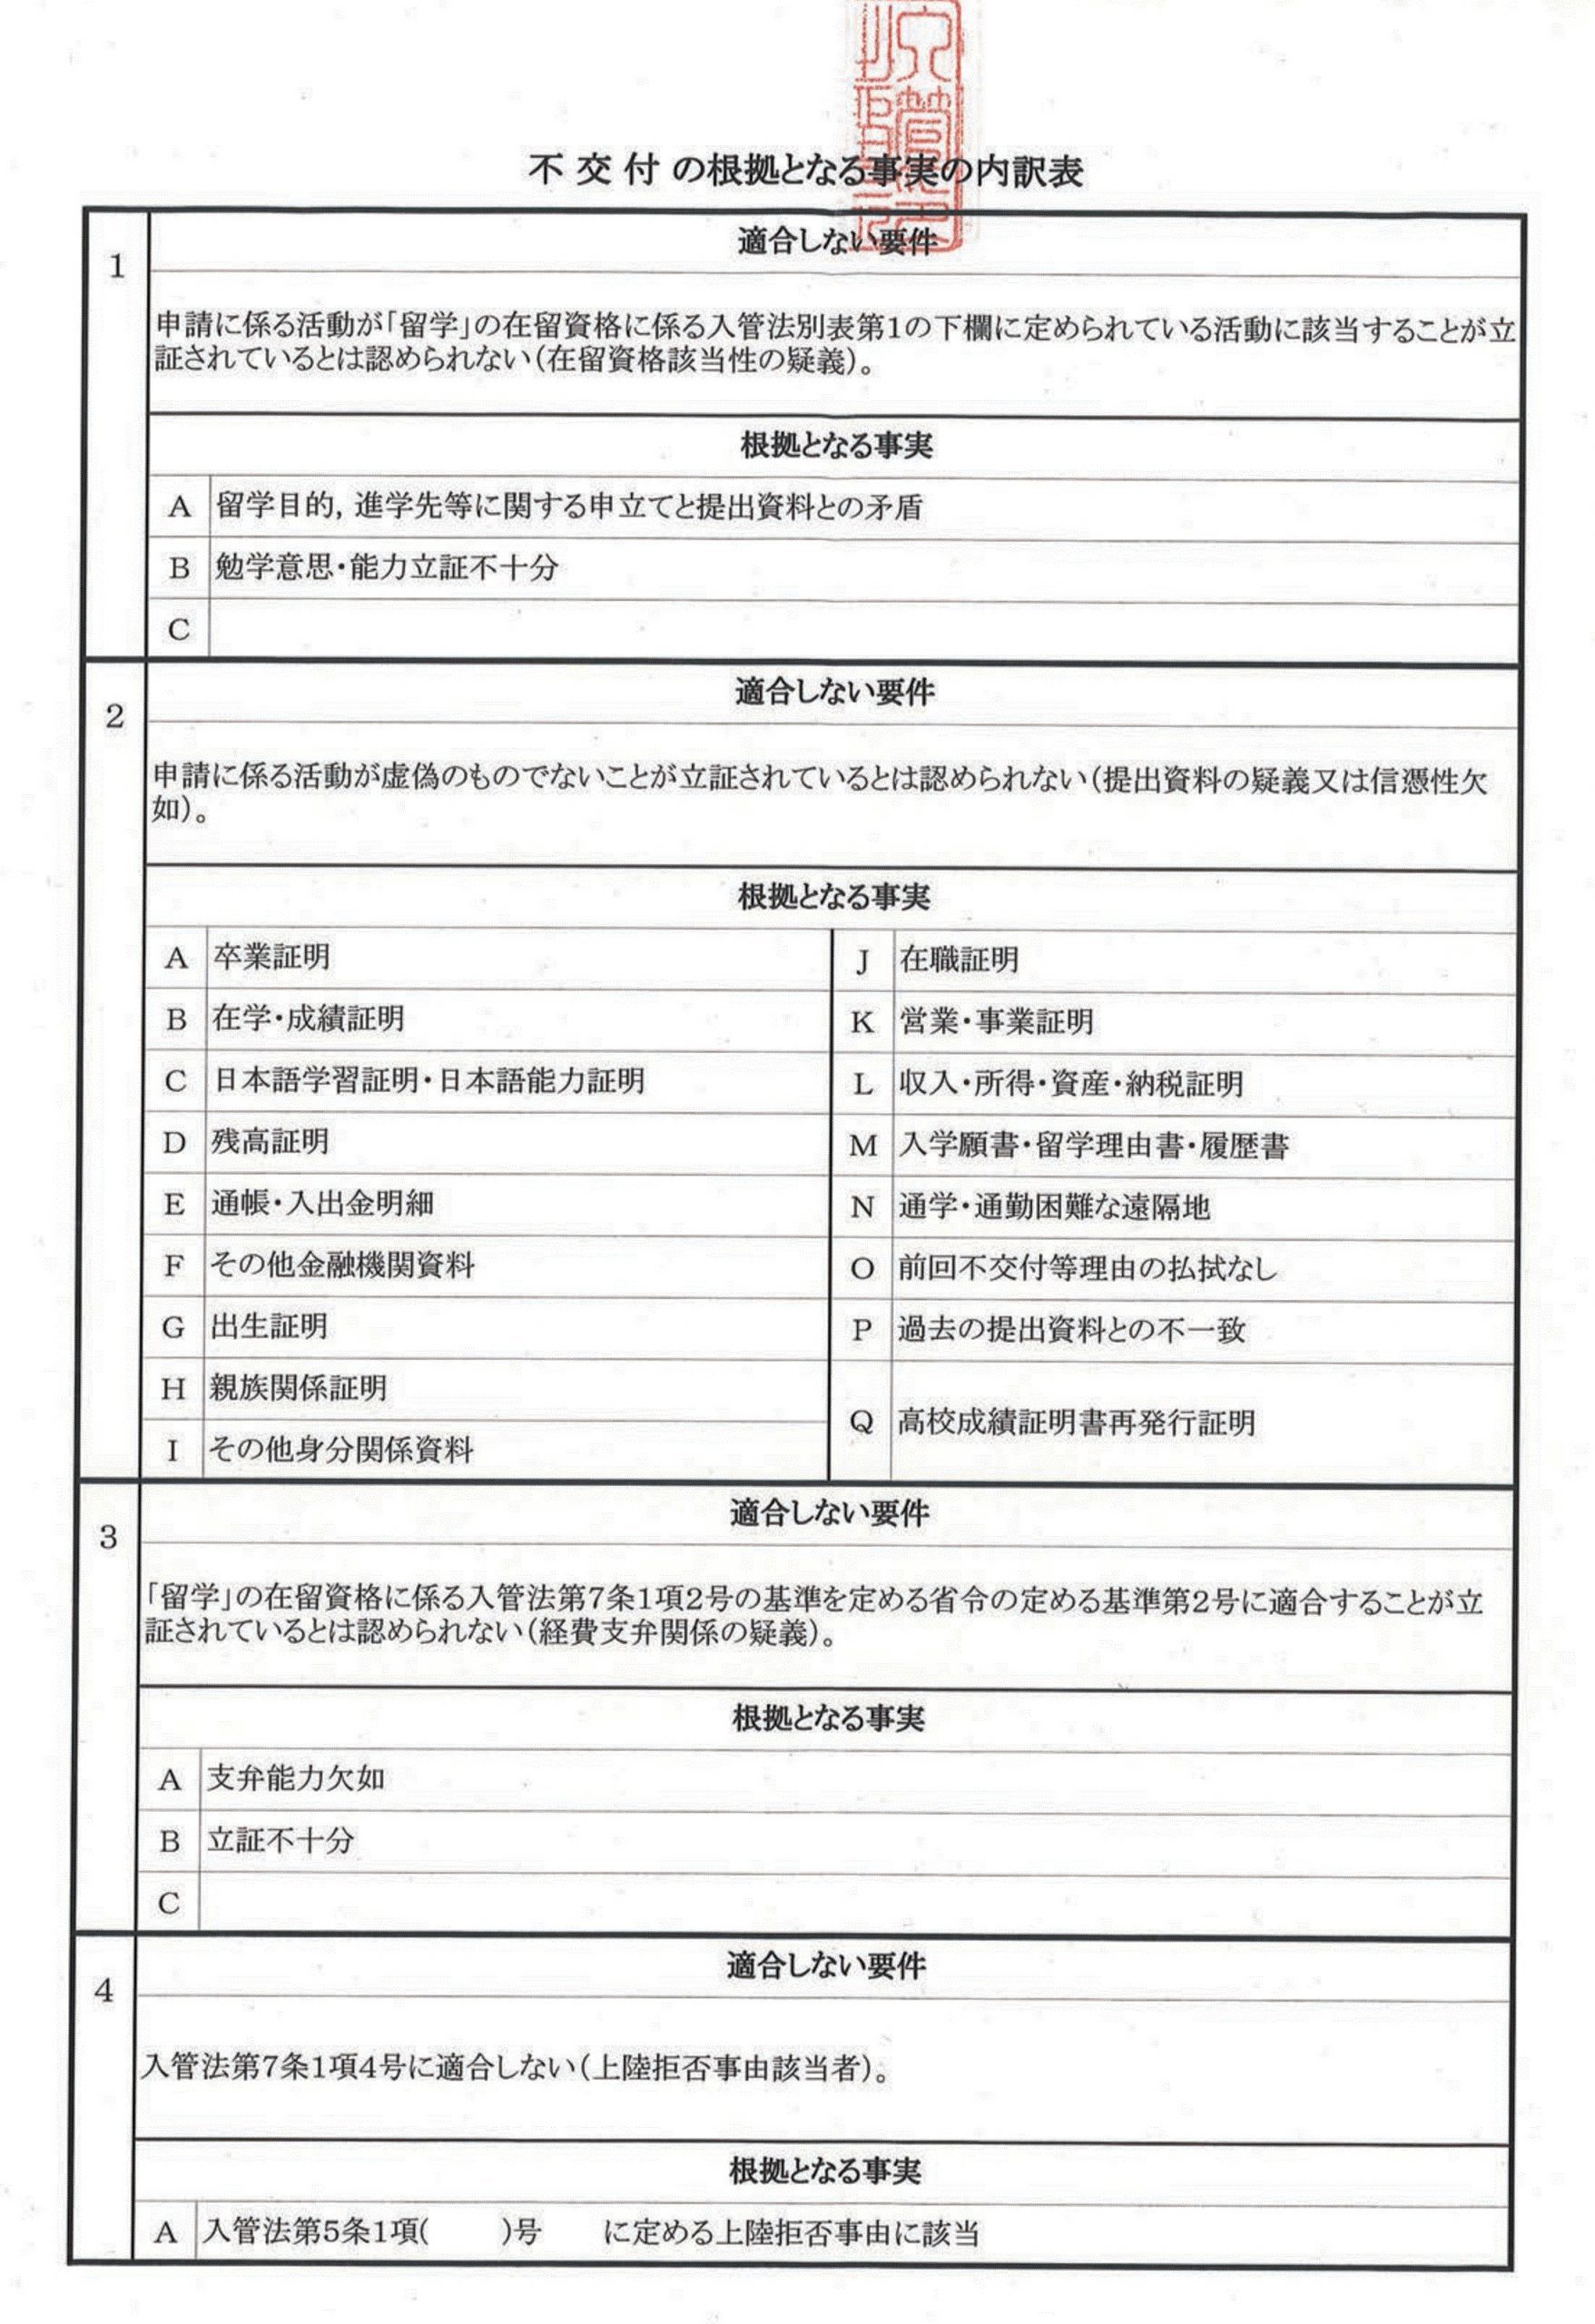 Bảng xác nhận lỗi trượt CXNC Fukuoka